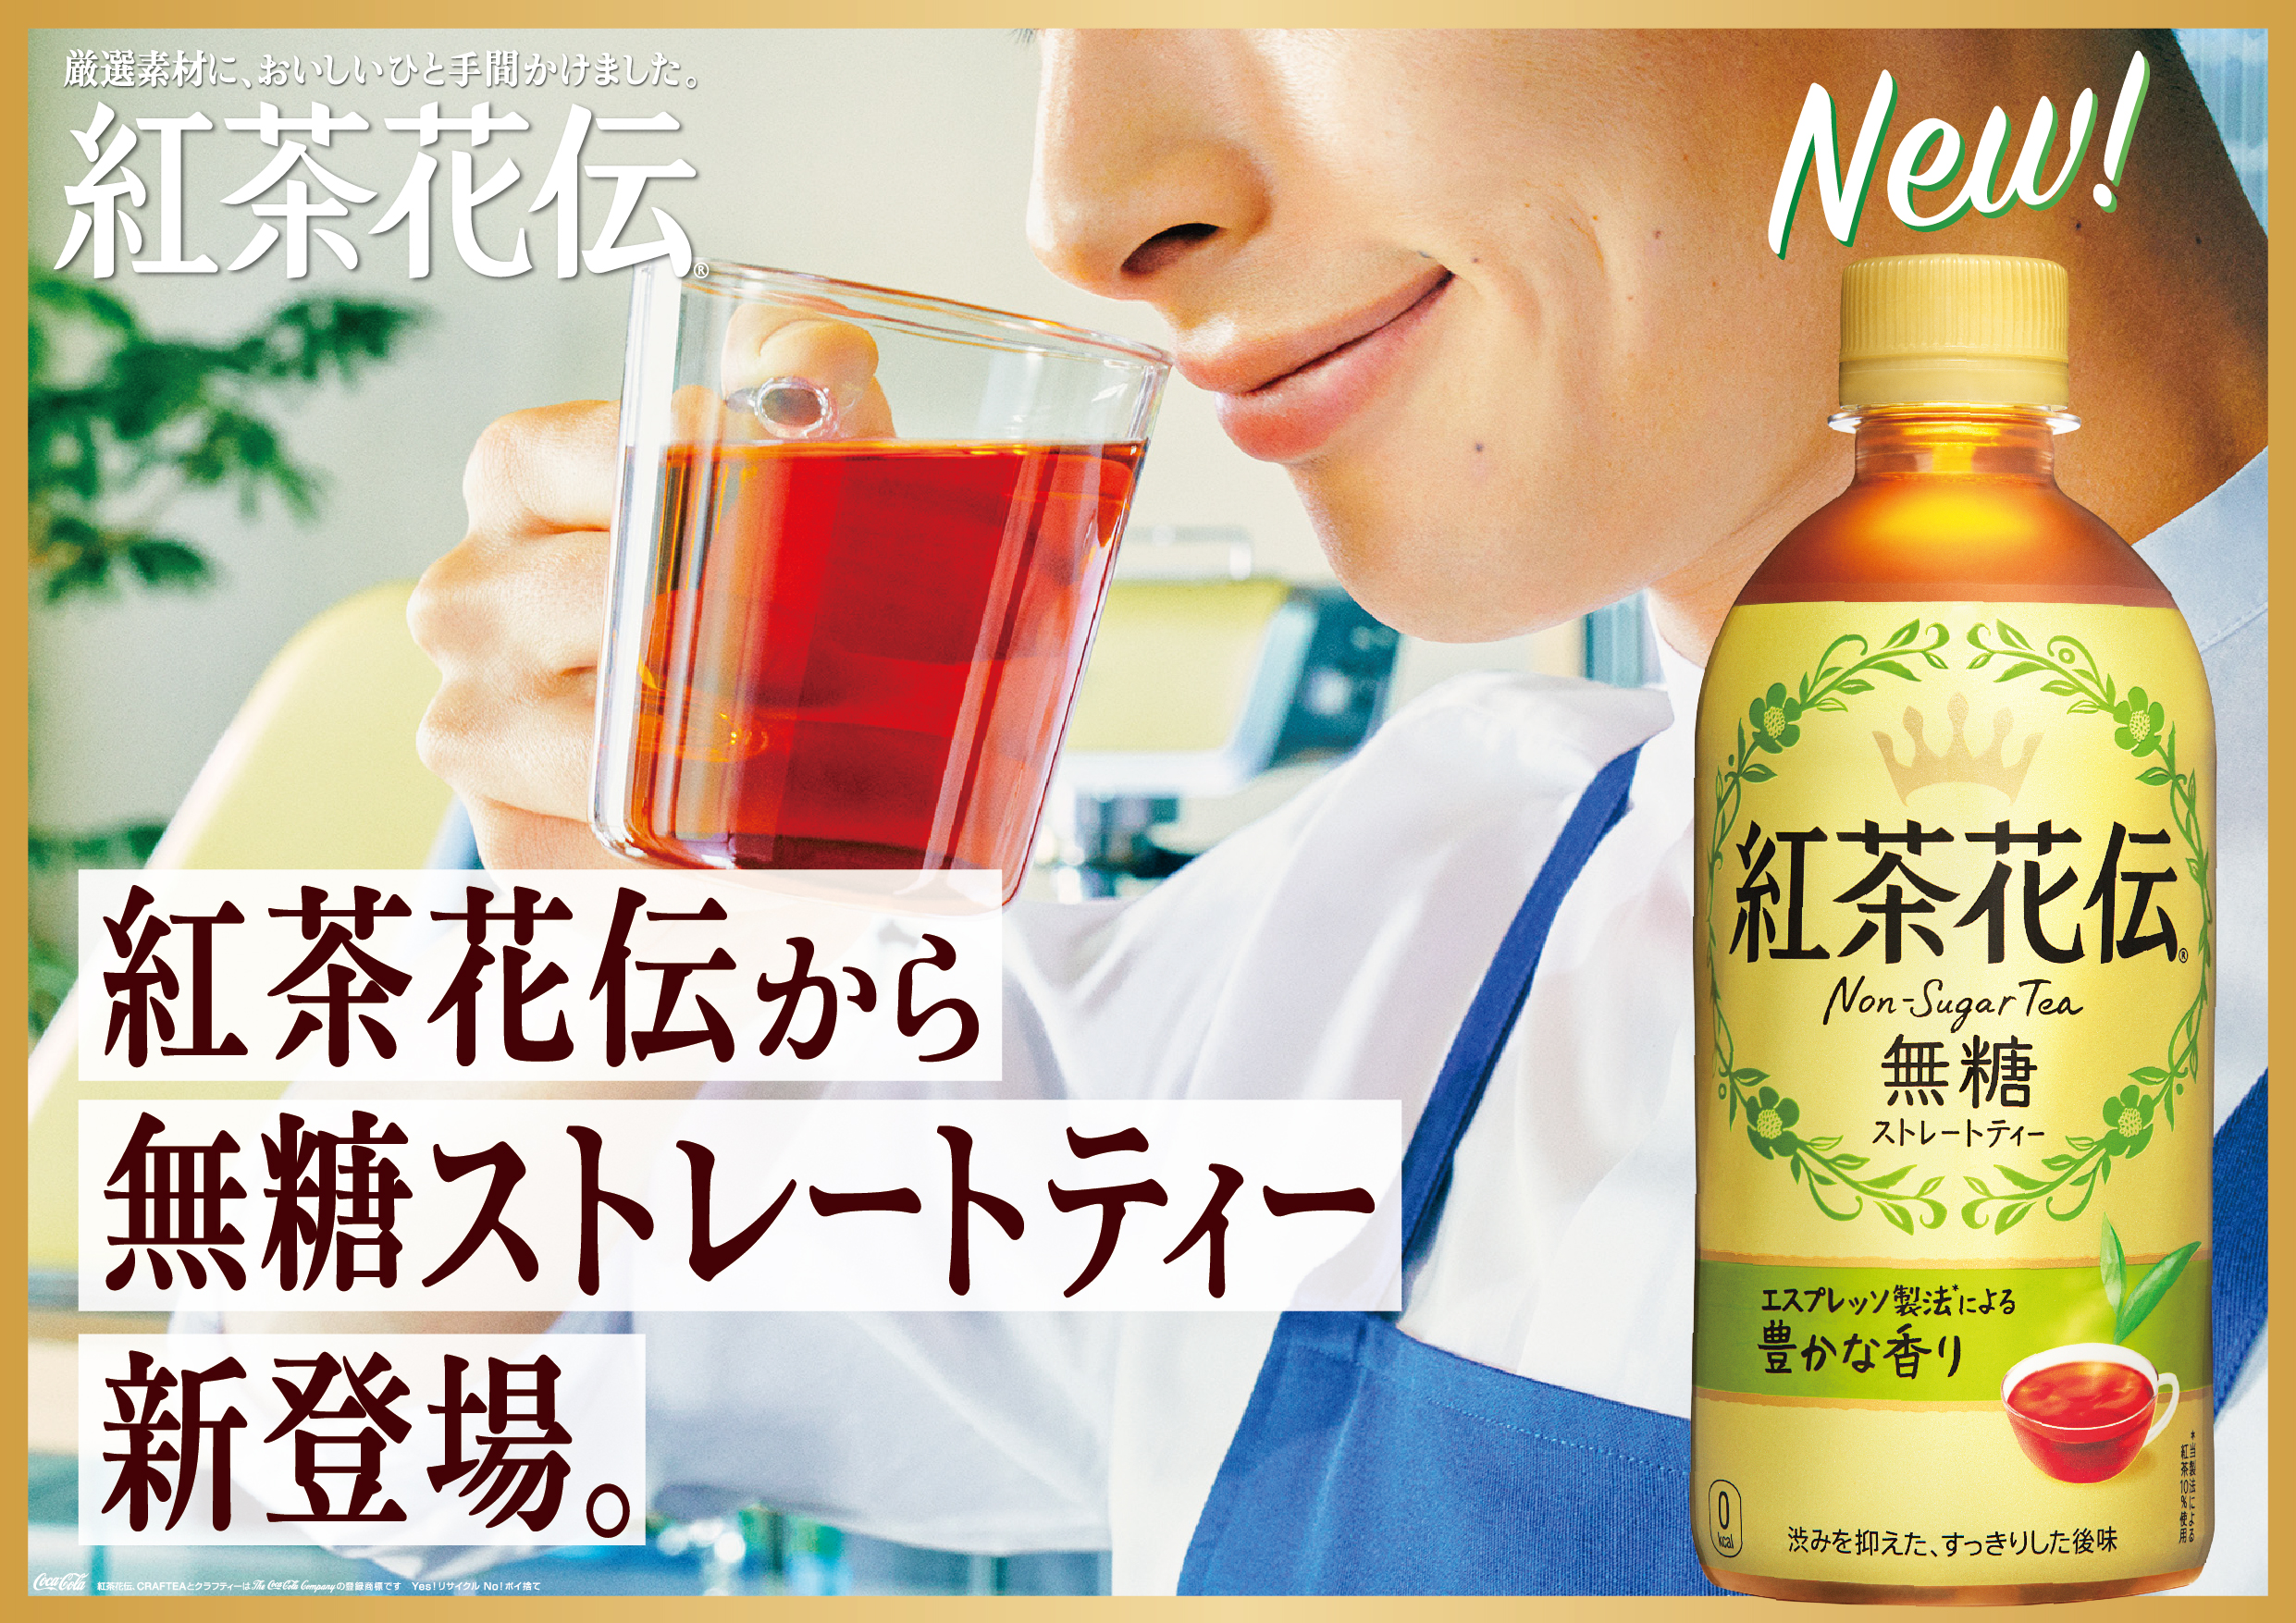 新戦略でブランドを強化する 紅茶花伝 多彩な味わいを楽しめる 本格的で上質な紅茶ブランドへ 紅茶花伝 無糖ストレートティー 3月8日 月 から新発売 日本コカ コーラ株式会社のプレスリリース